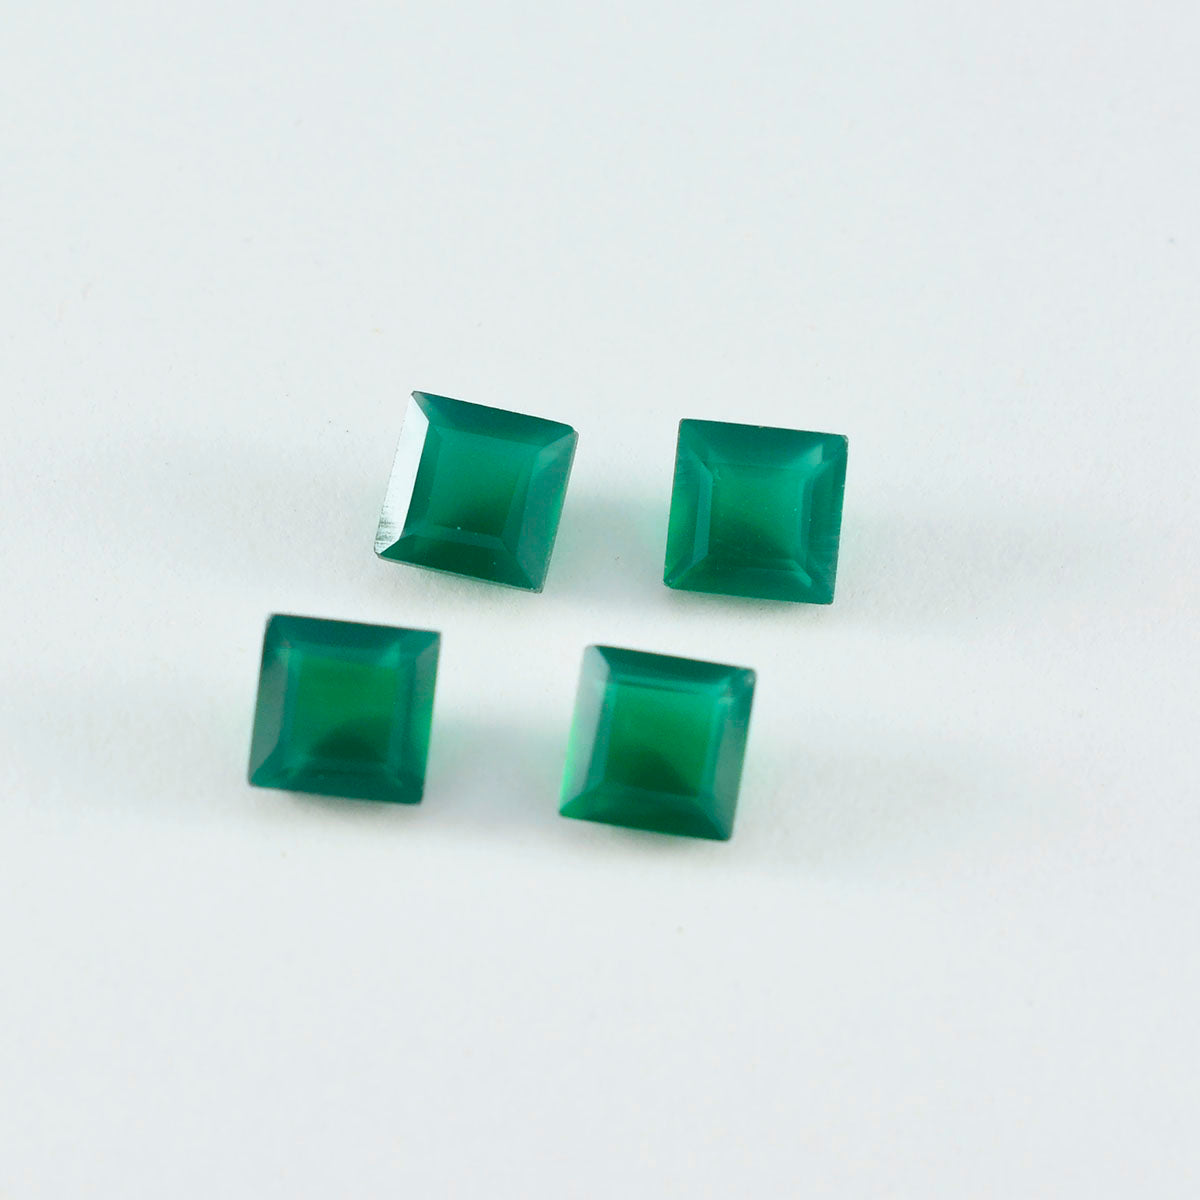 Riyogems 1 pièce d'onyx vert naturel à facettes 7x7mm forme carrée pierres précieuses d'excellente qualité